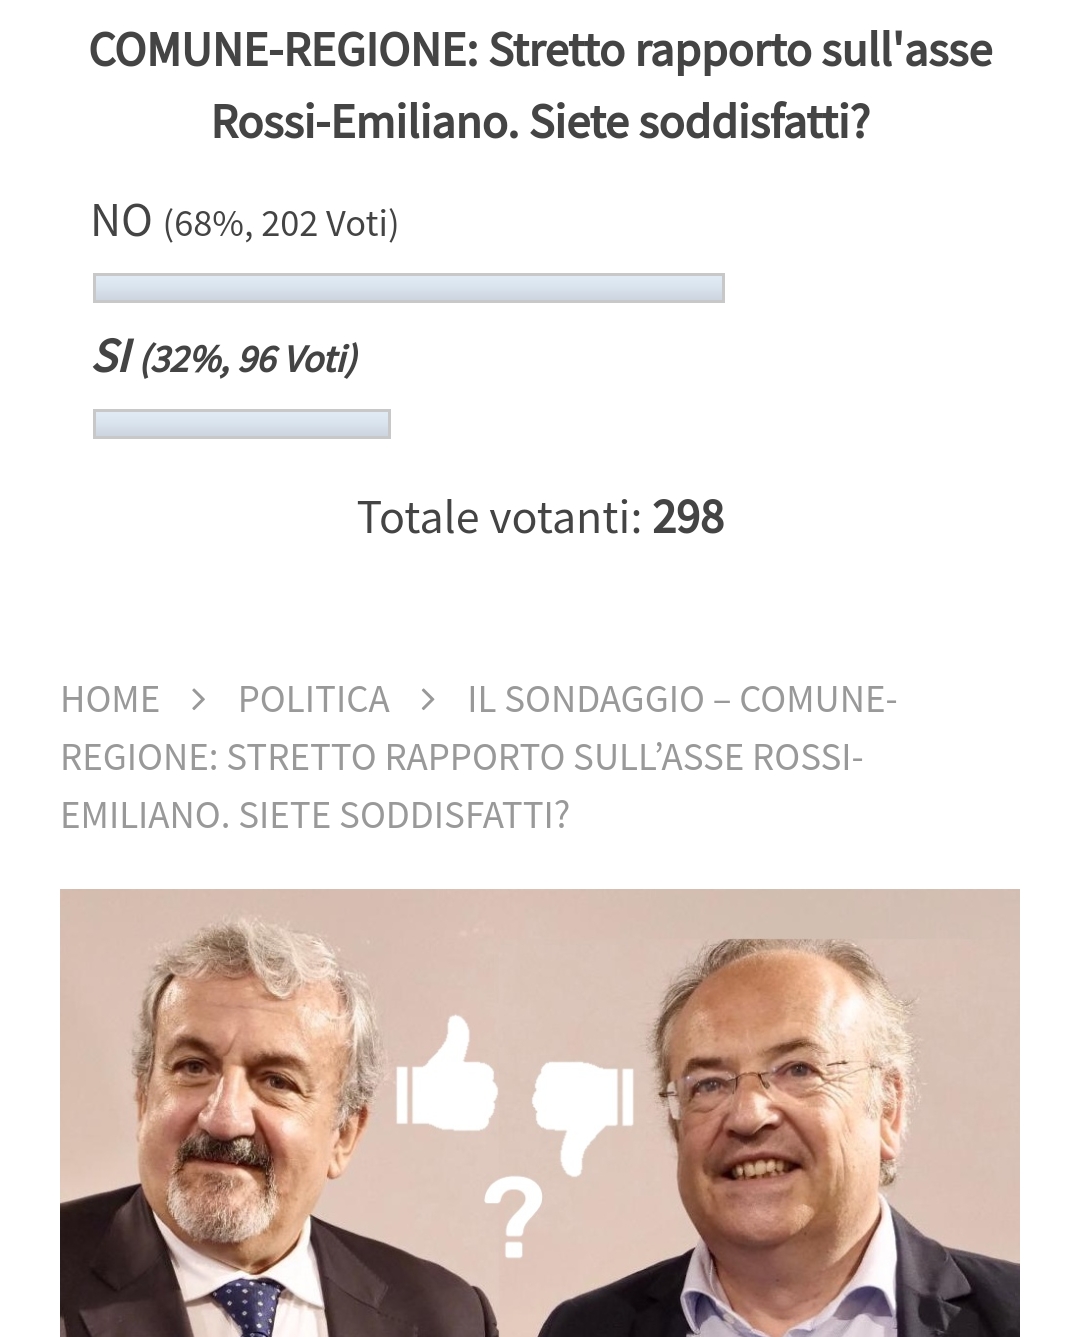 SONDAGGIO – Dopo due settimane, per il 68% dei votanti l’asse Rossi-Emiliano non soddisfa